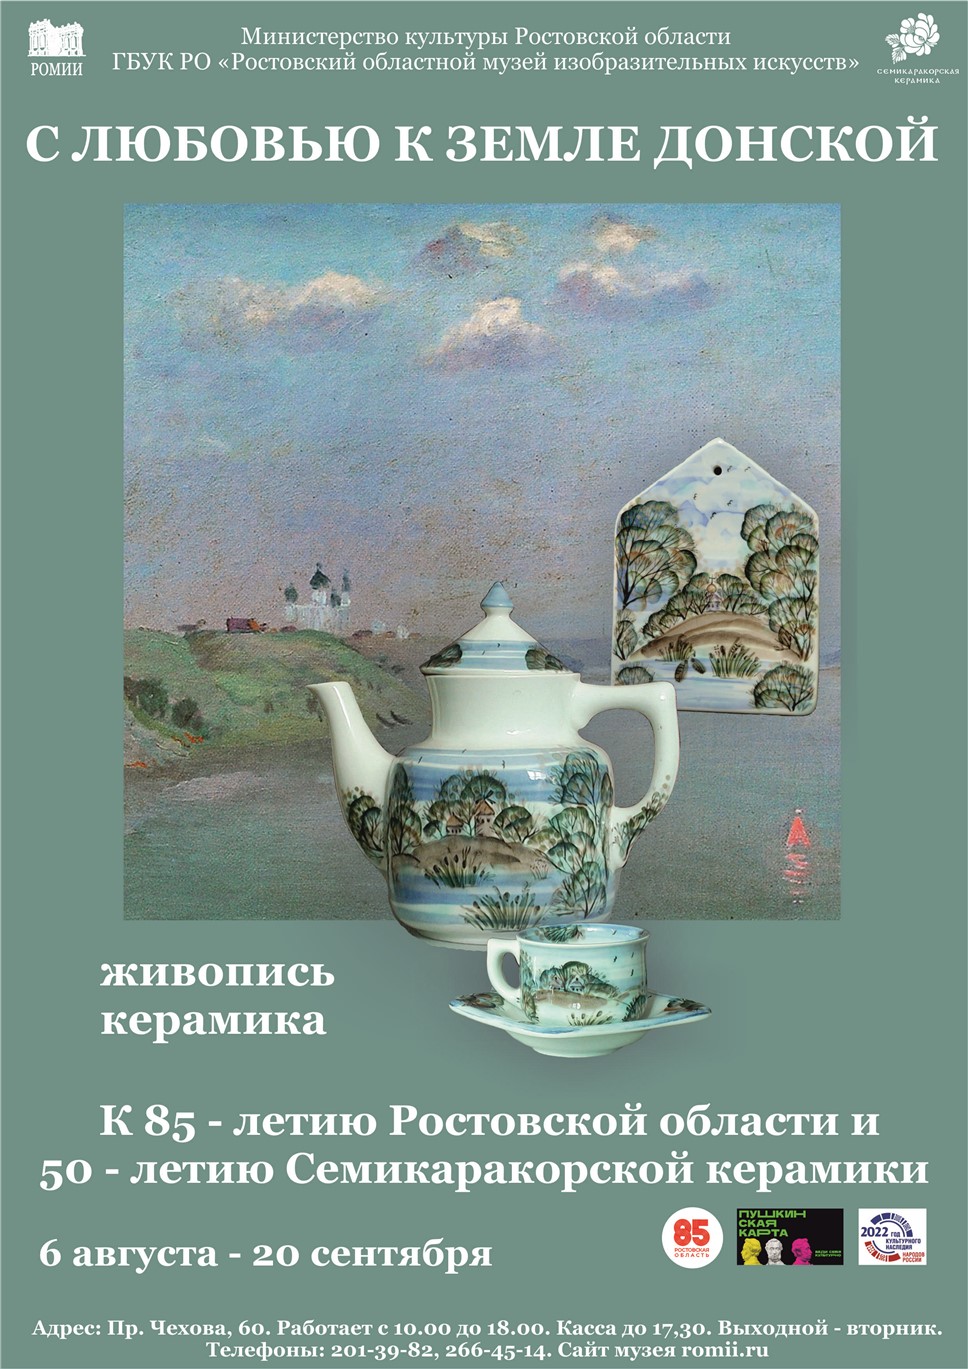 26 августа в Ростовском музее изобразительных искусств открывается выставка 